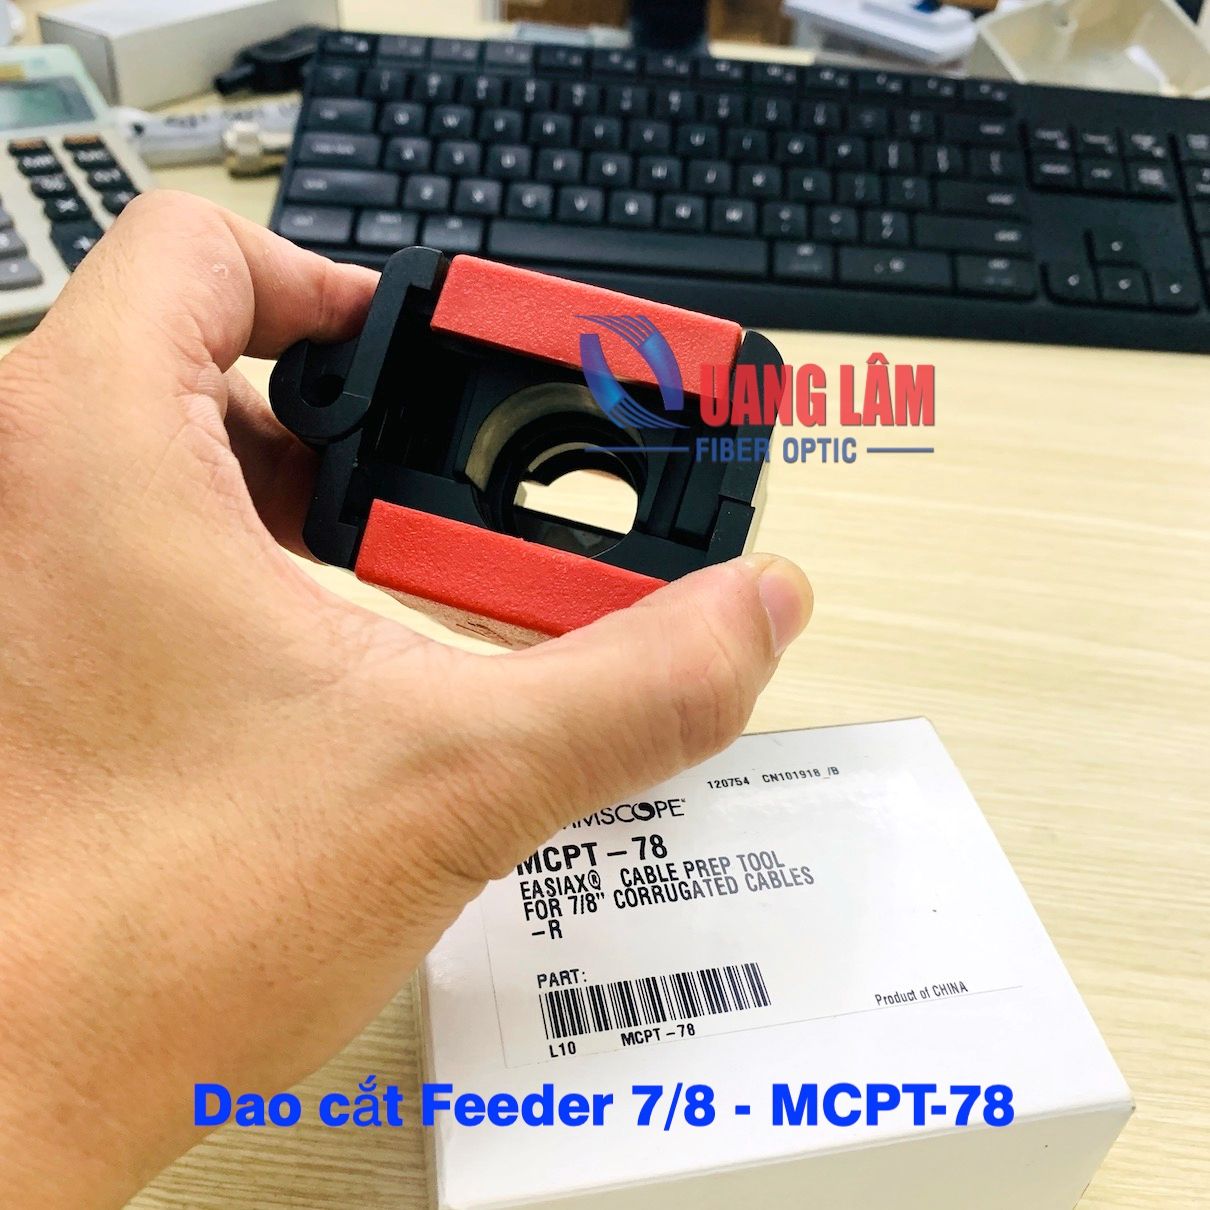 Dao cắt Feeder 7/8 MCPT-78 - COMMSCOPE